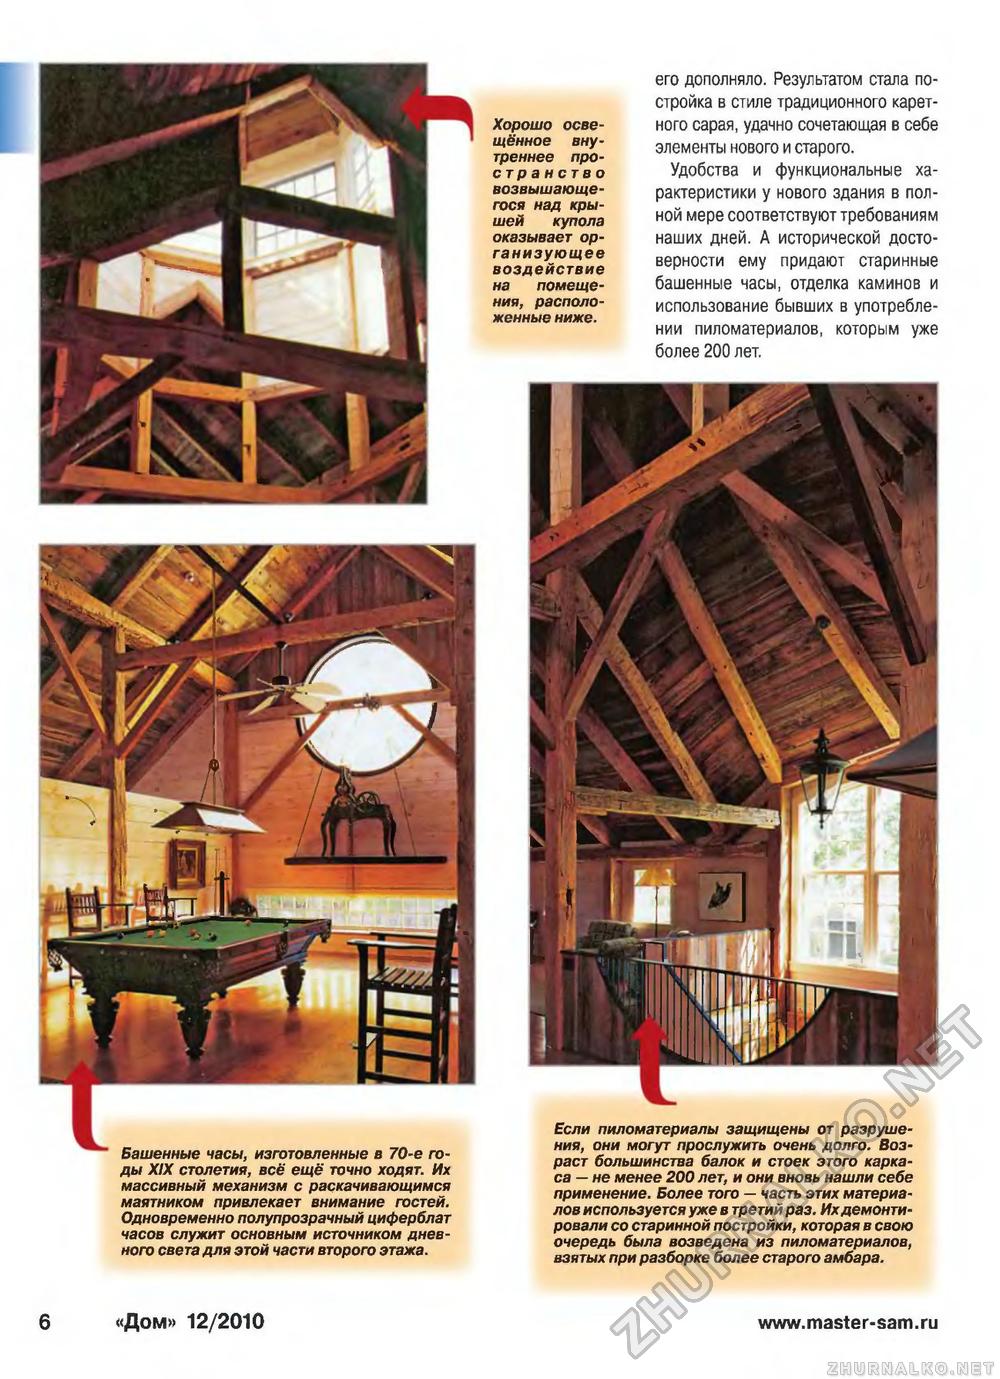 Дом 2010-12, страница 6